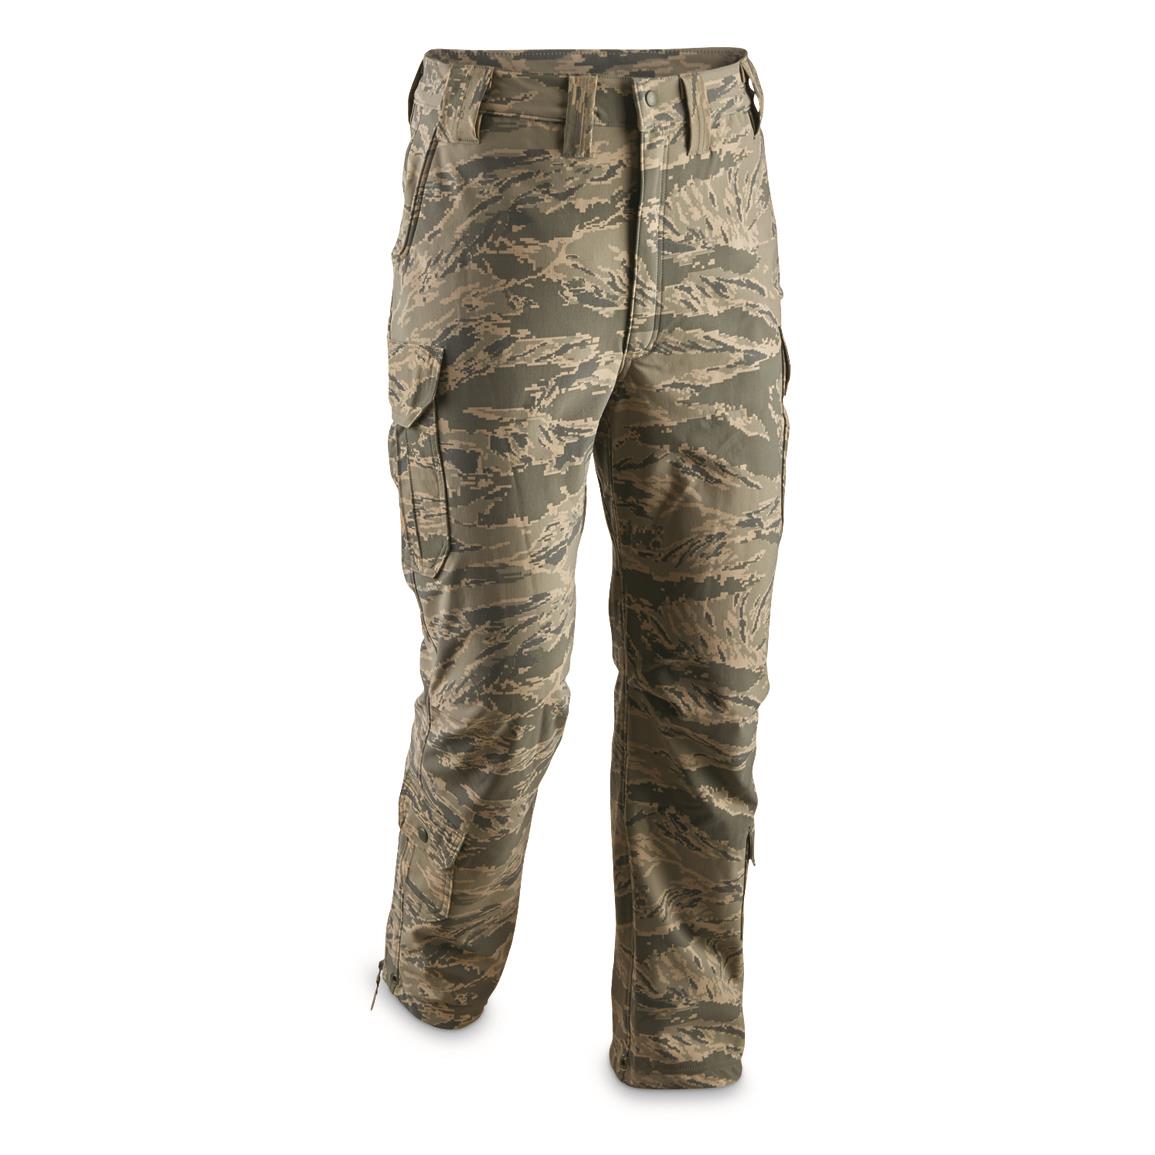 fleece lined camouflage pants